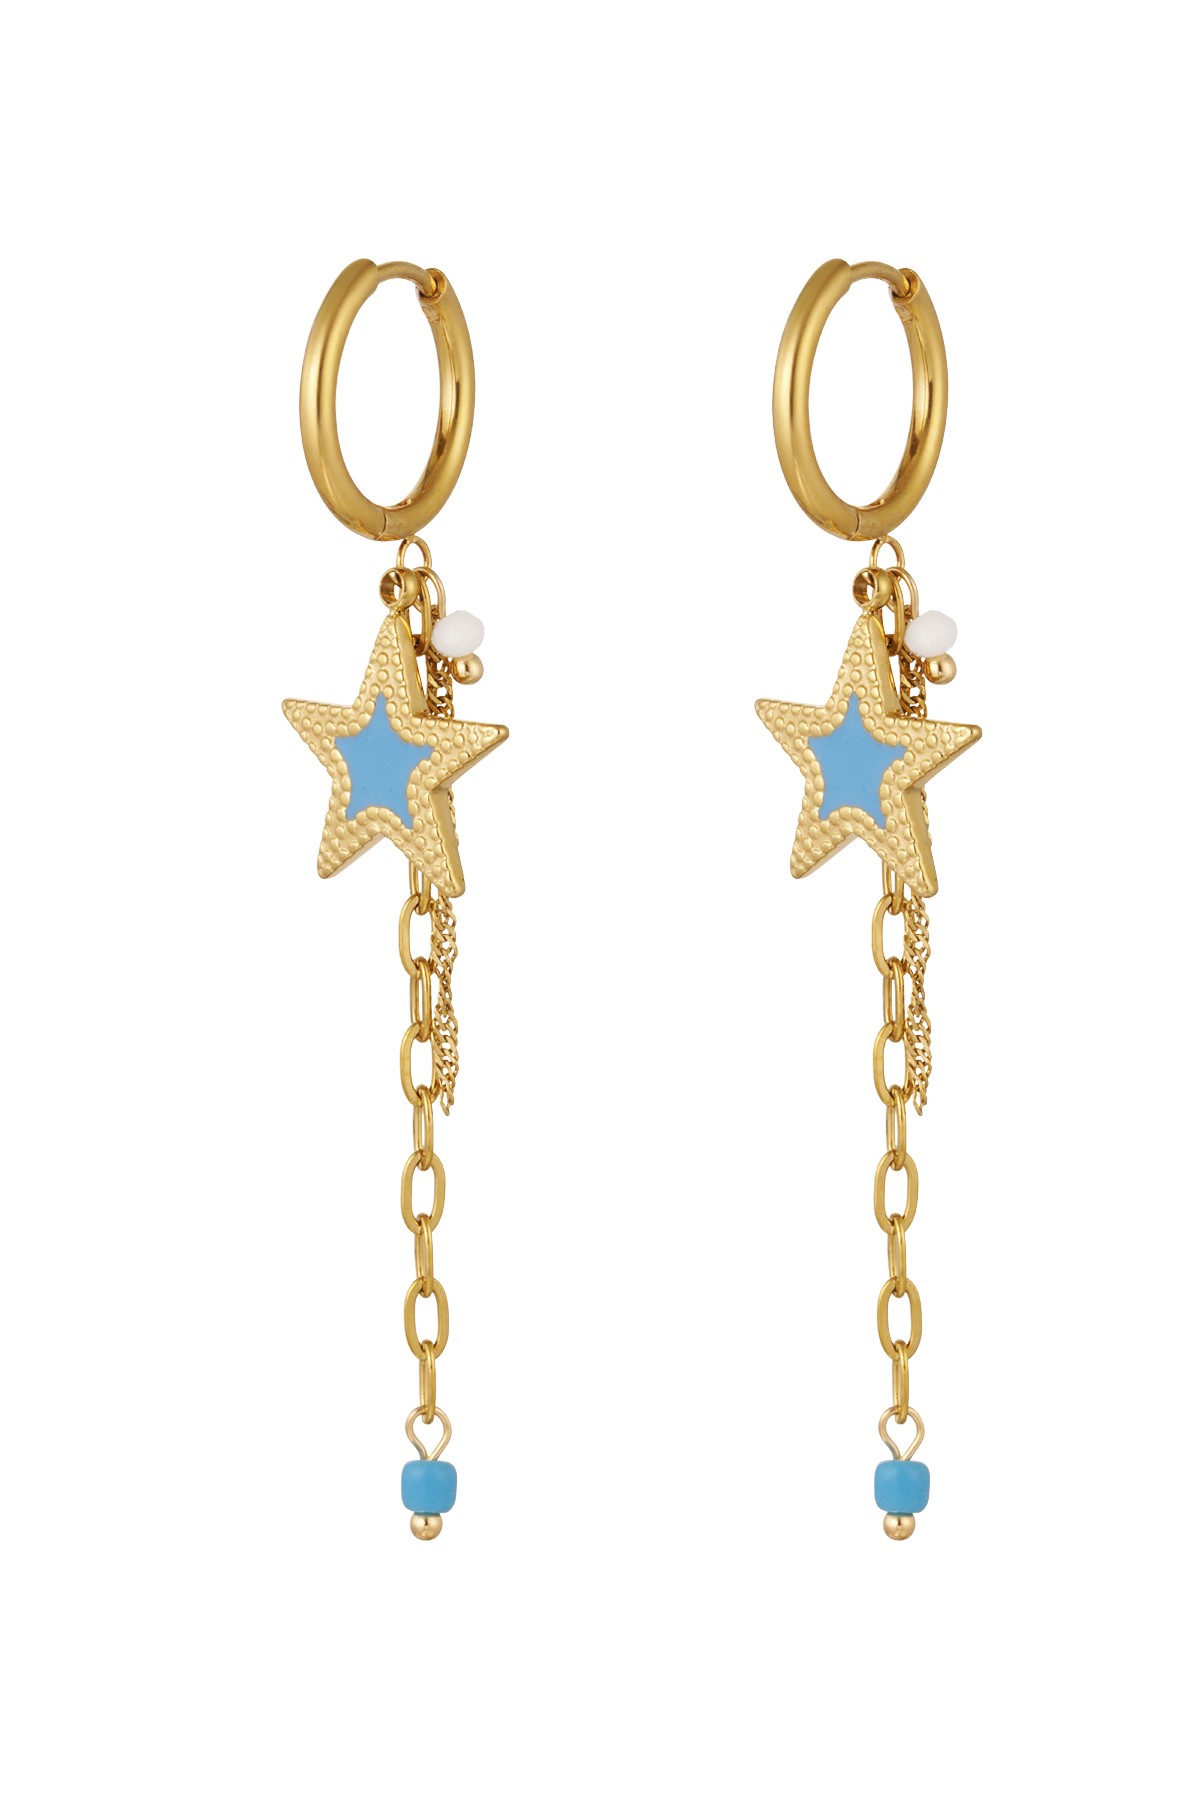 Ohrringe mit Kette und Stern blau - gold 